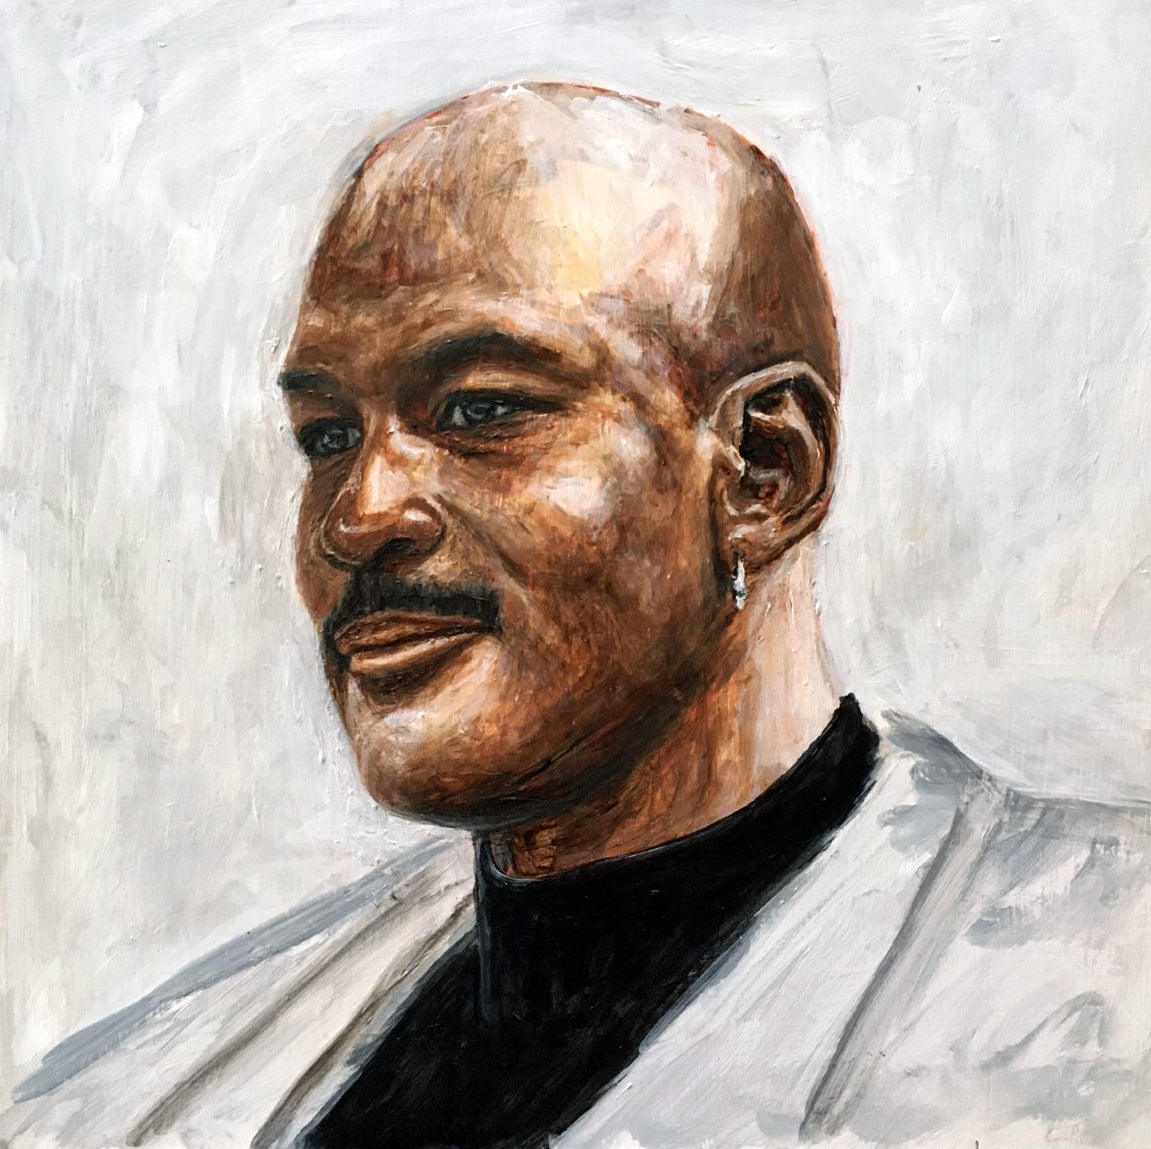 michael jordan portrait painting